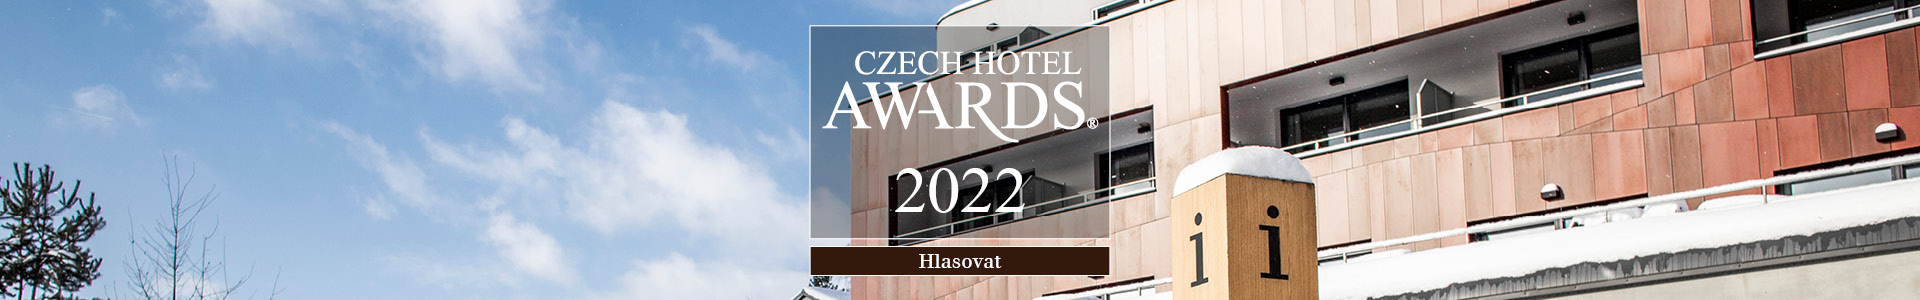 Czech Hotel Awards 2022-banner-web_1920x300_